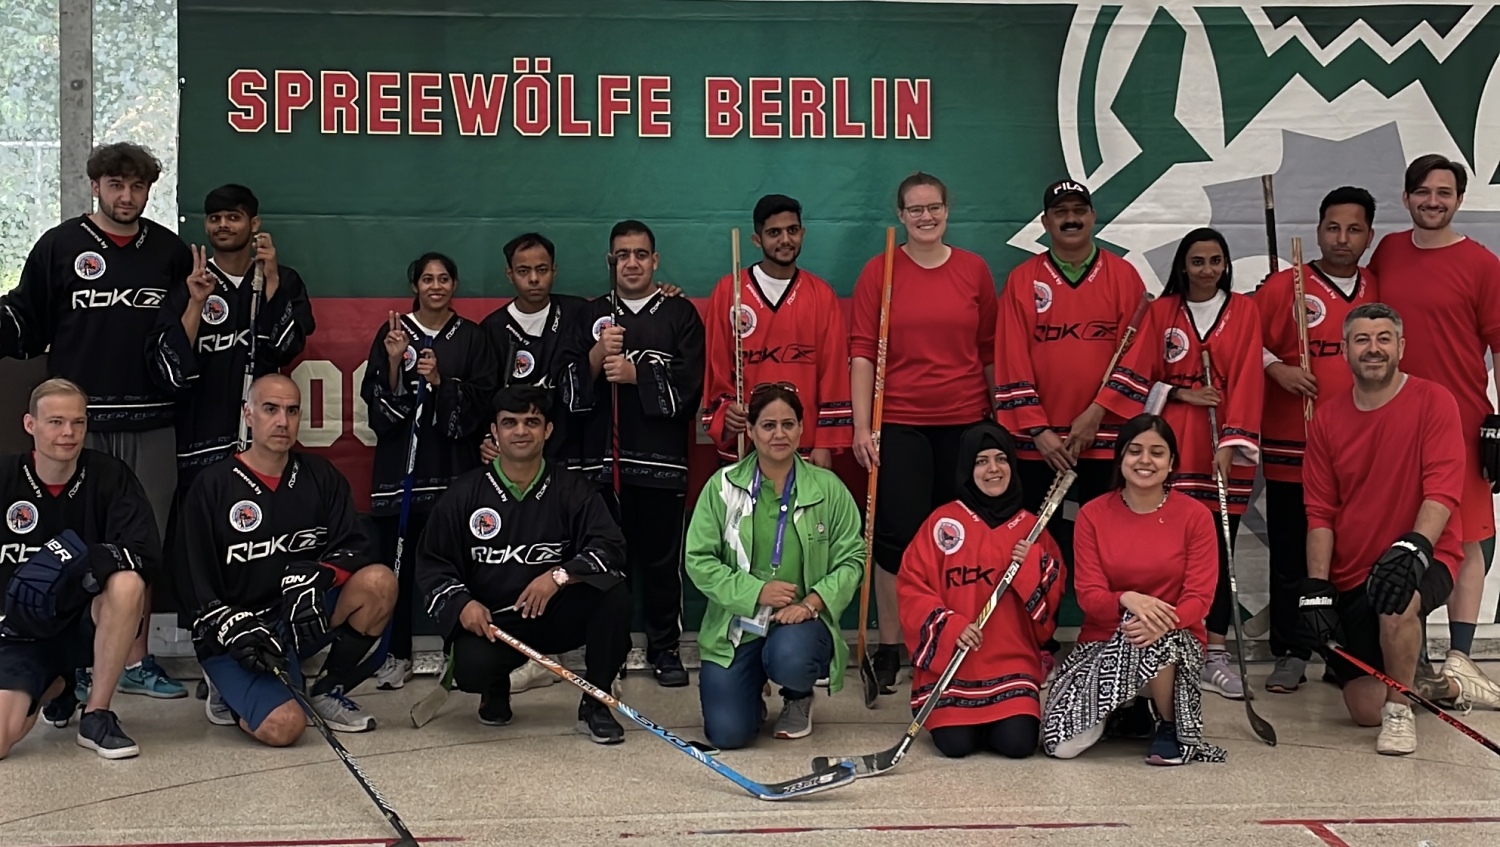 Gruppenbild einiger pakistanischer Athlet*innen mit den Spreewölfen Berlin